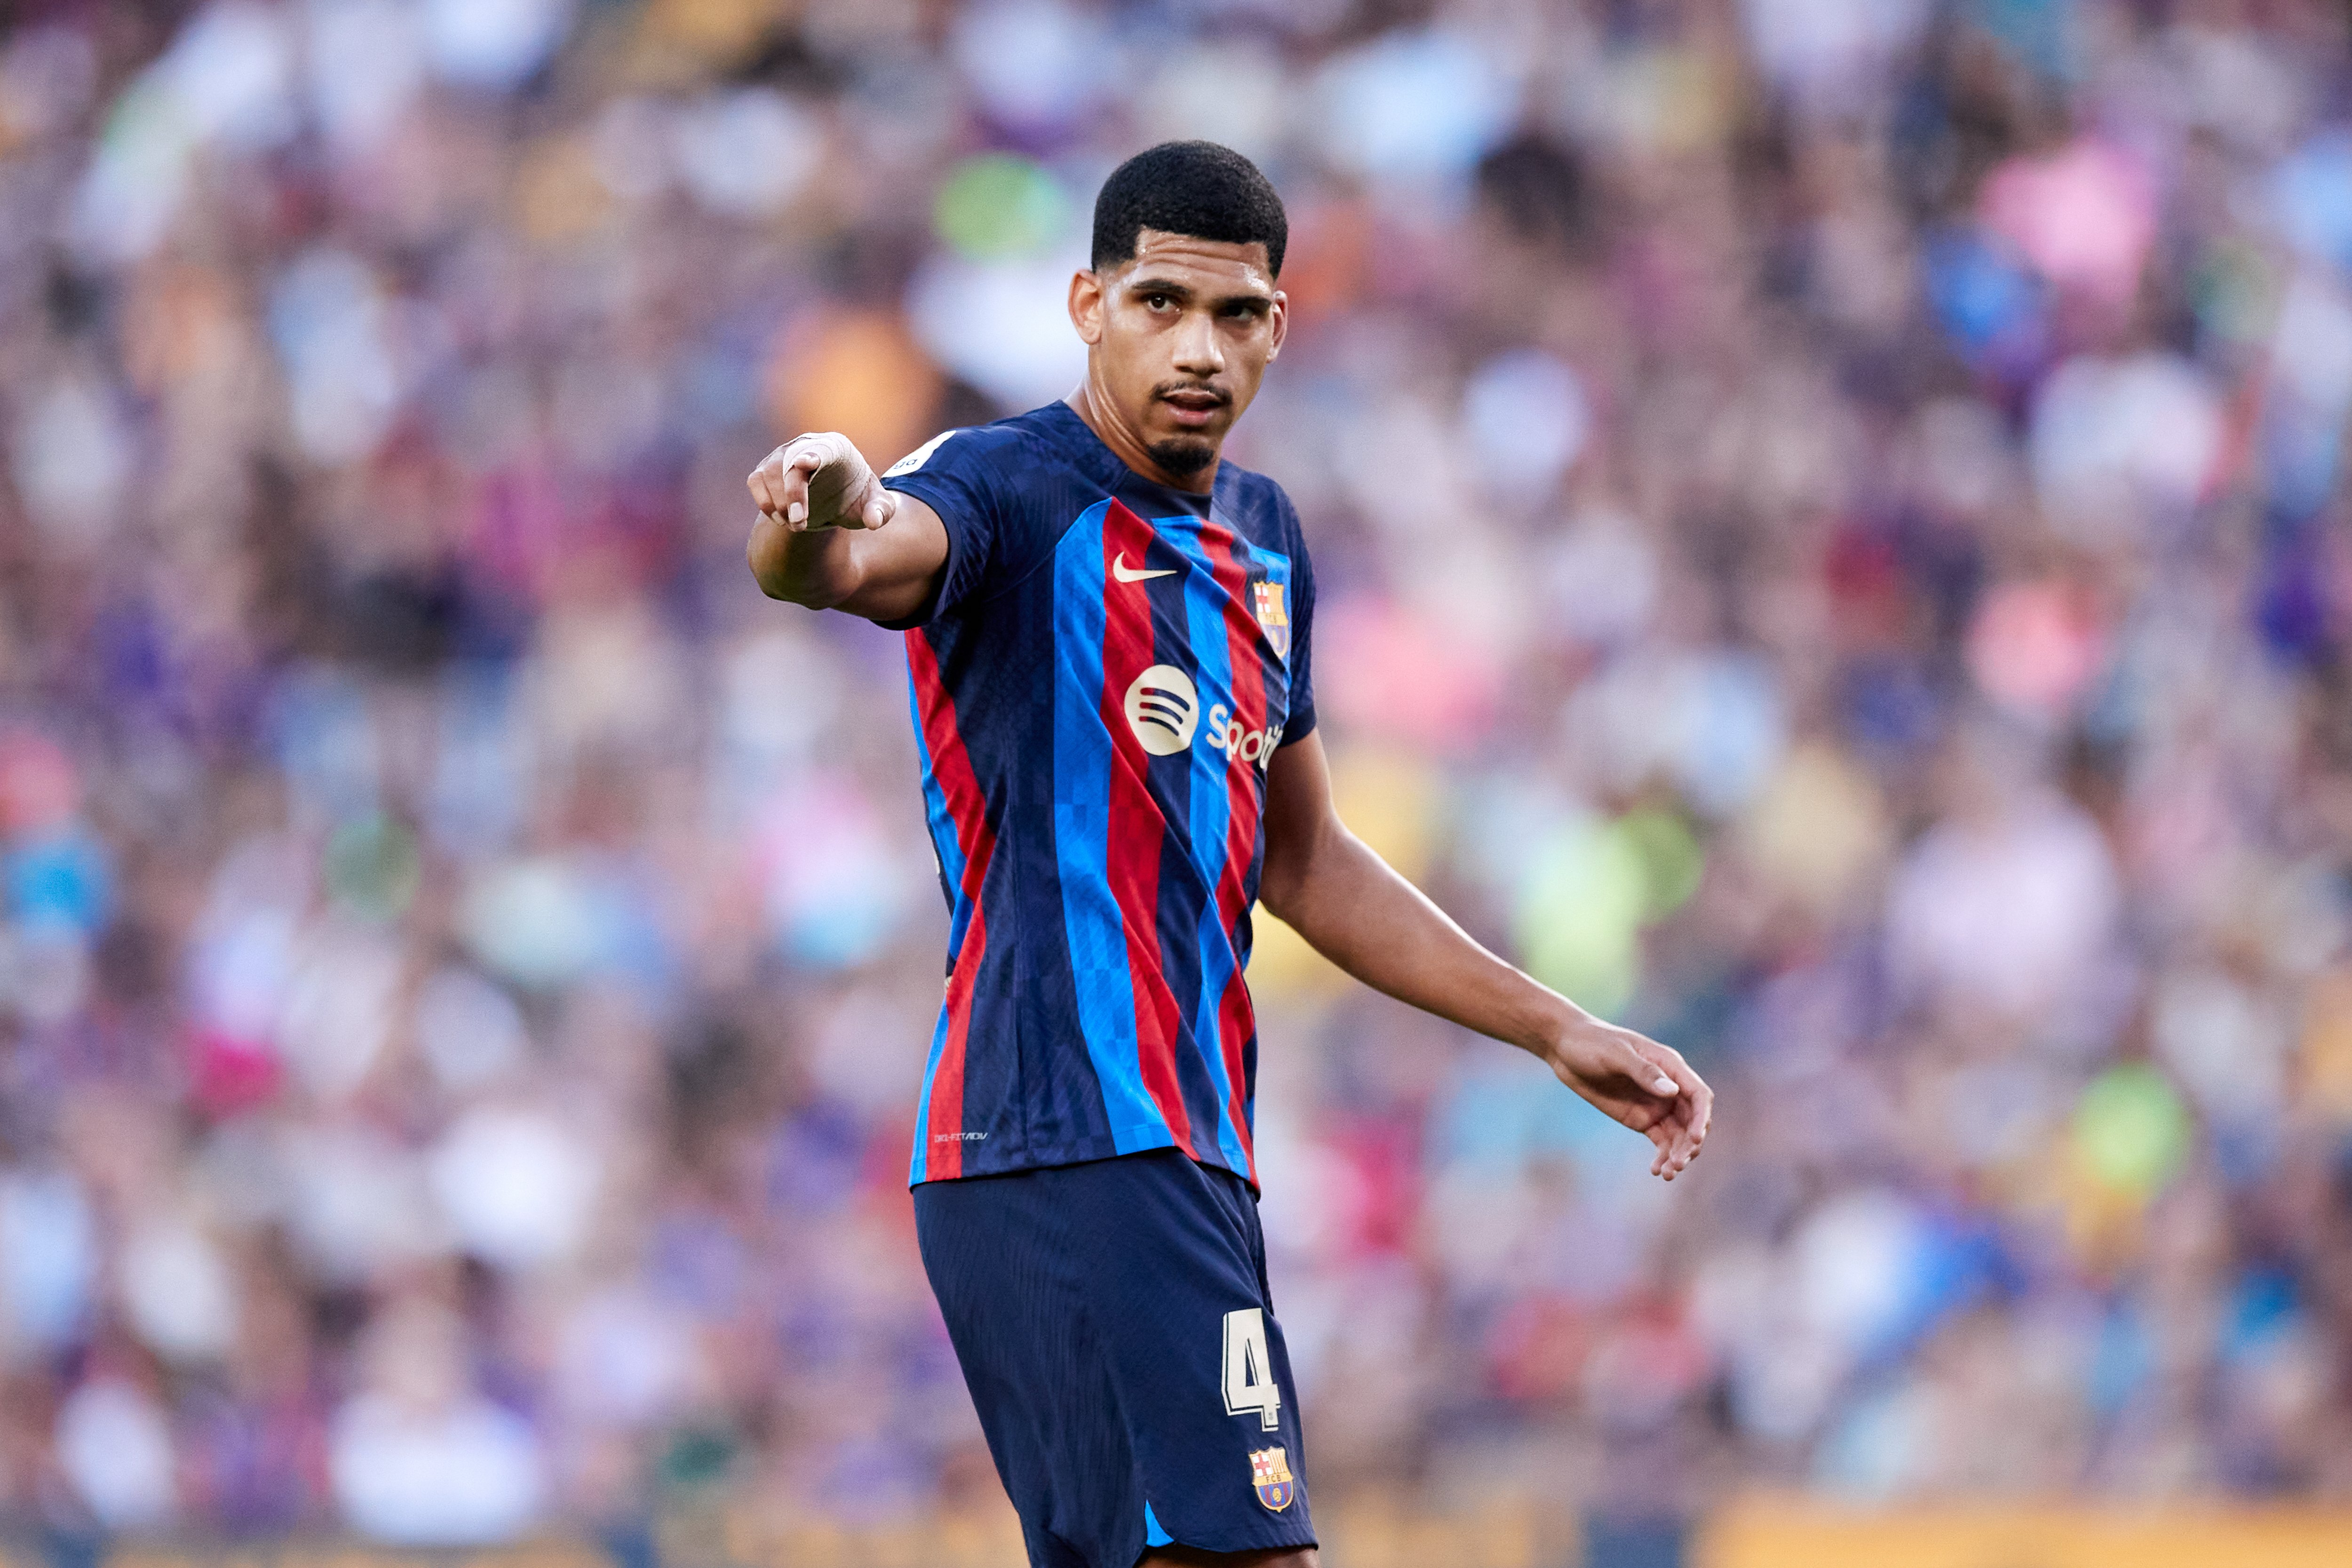 Quant pagarà la FIFA al Barça per compensar la lesió d'Araujo?